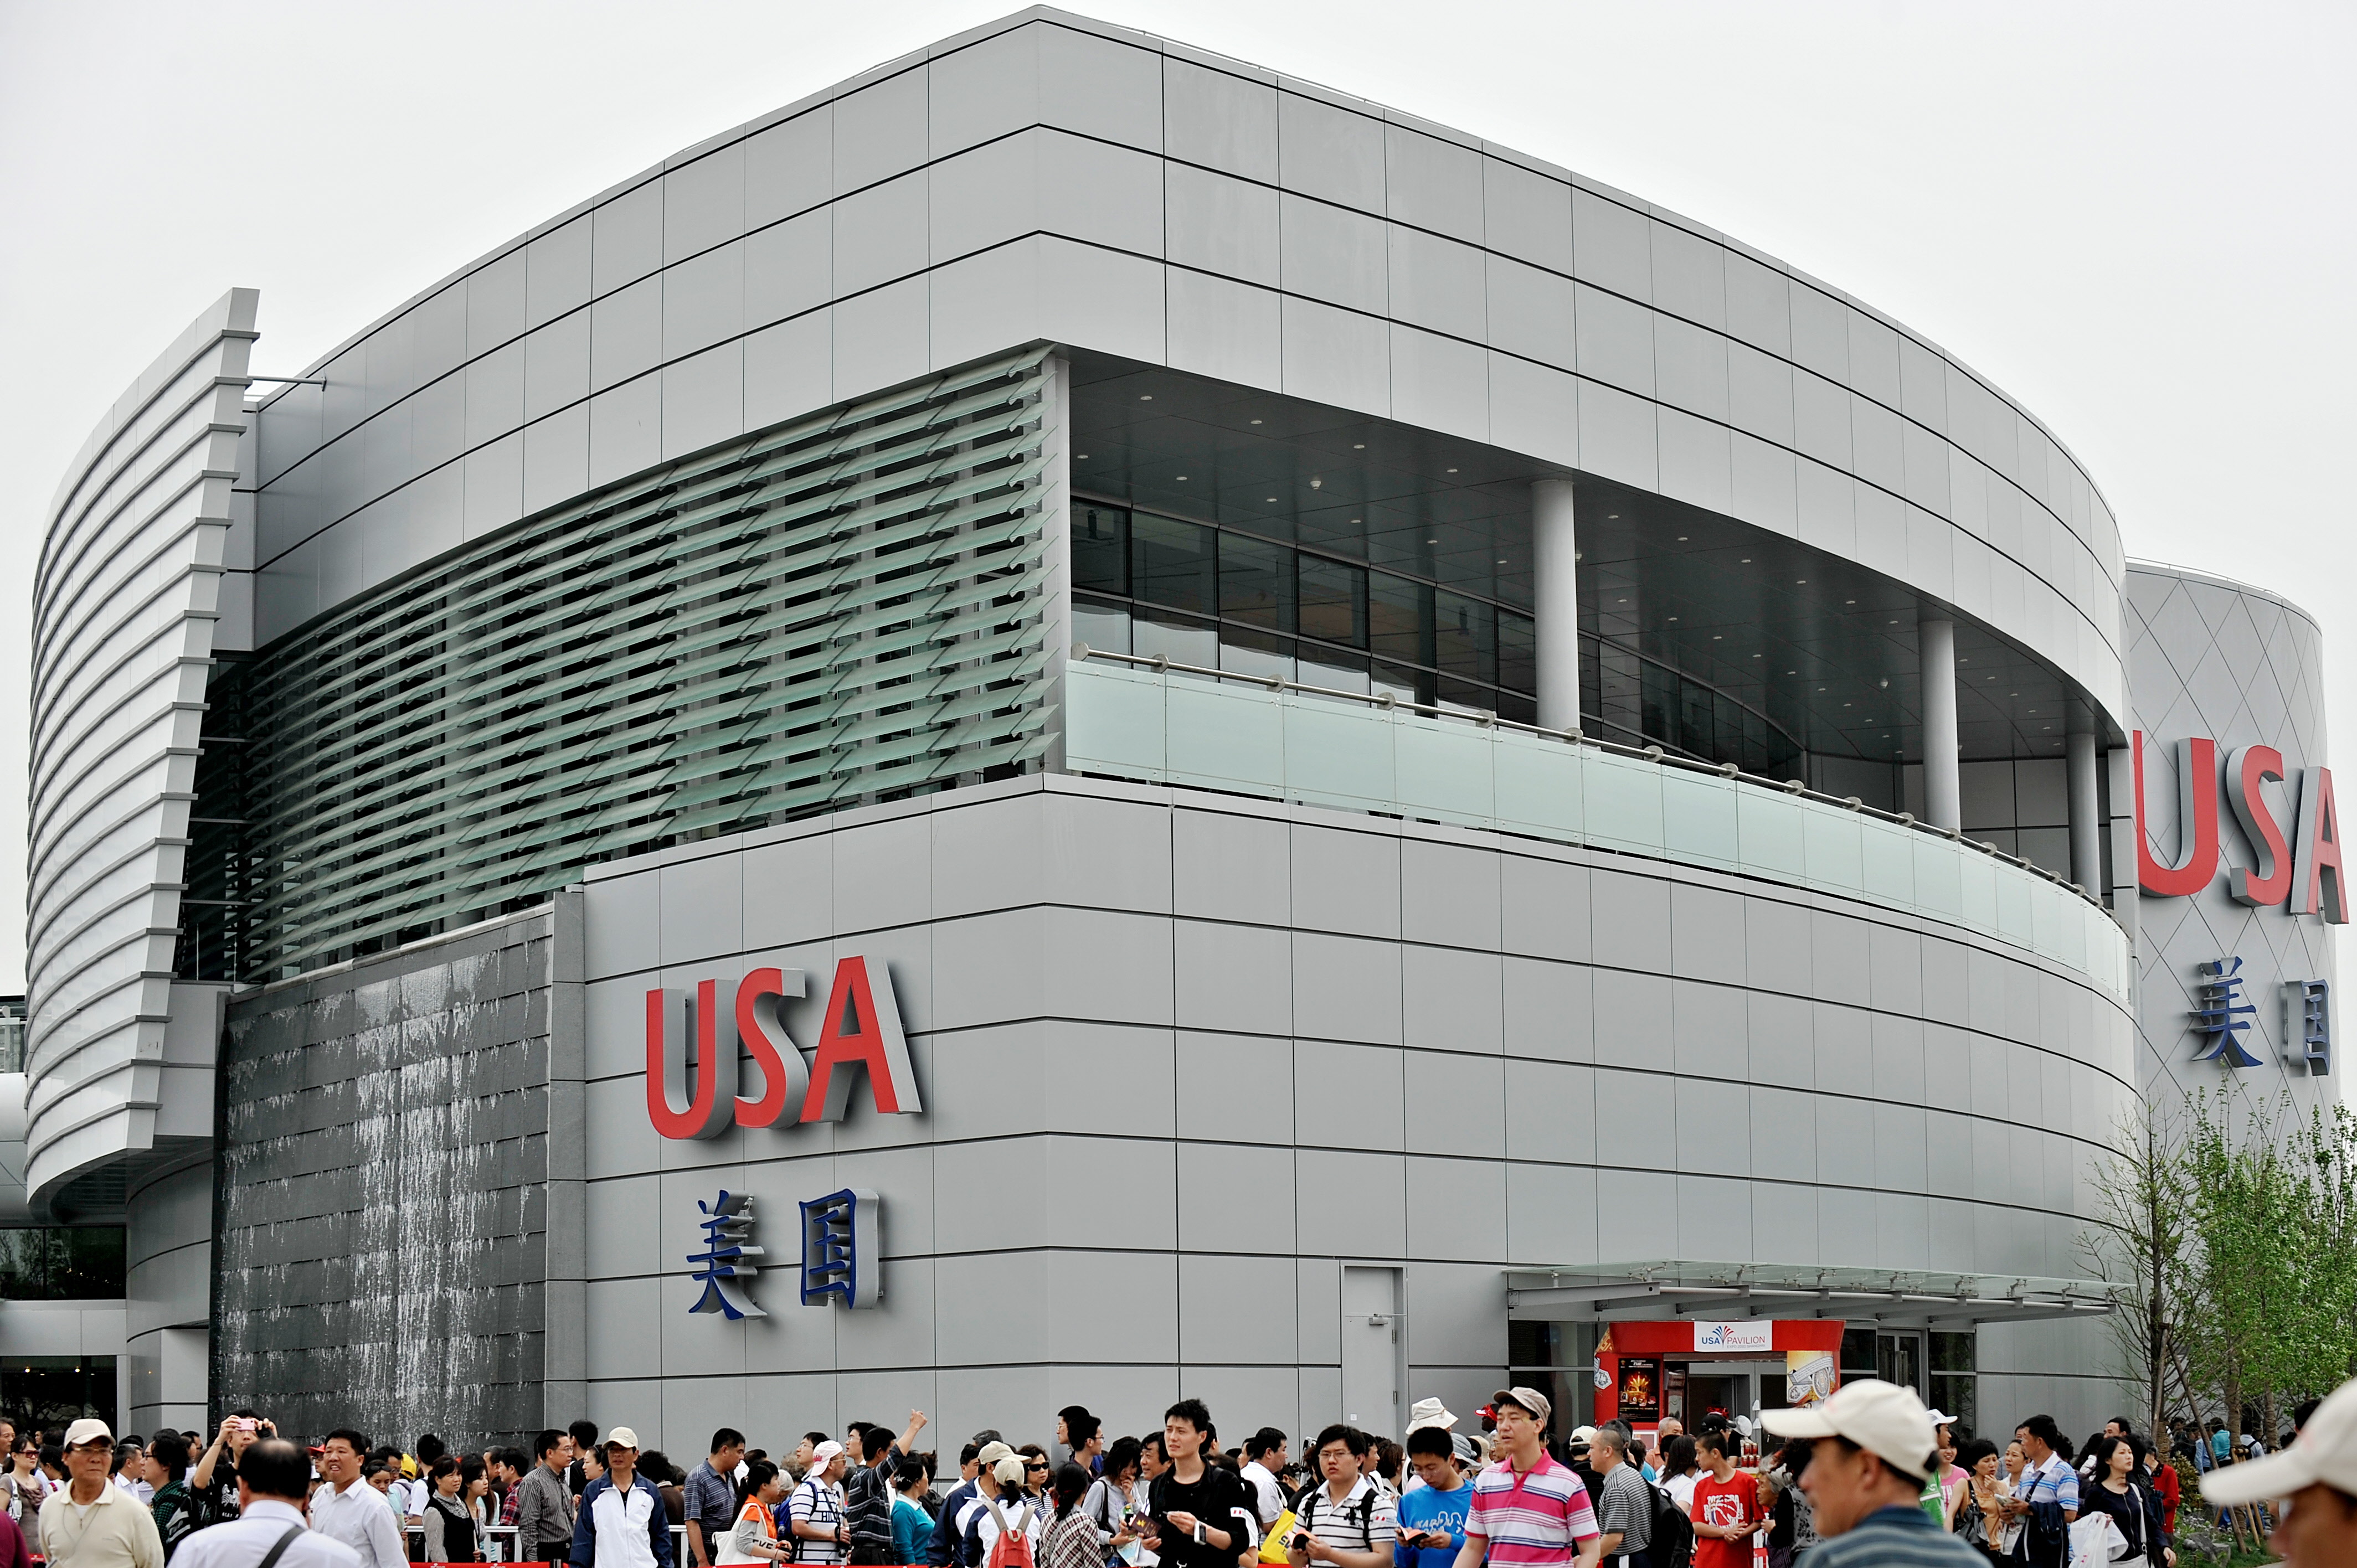 上海世博會美國館其實是中共拿出近4億人民幣建造。